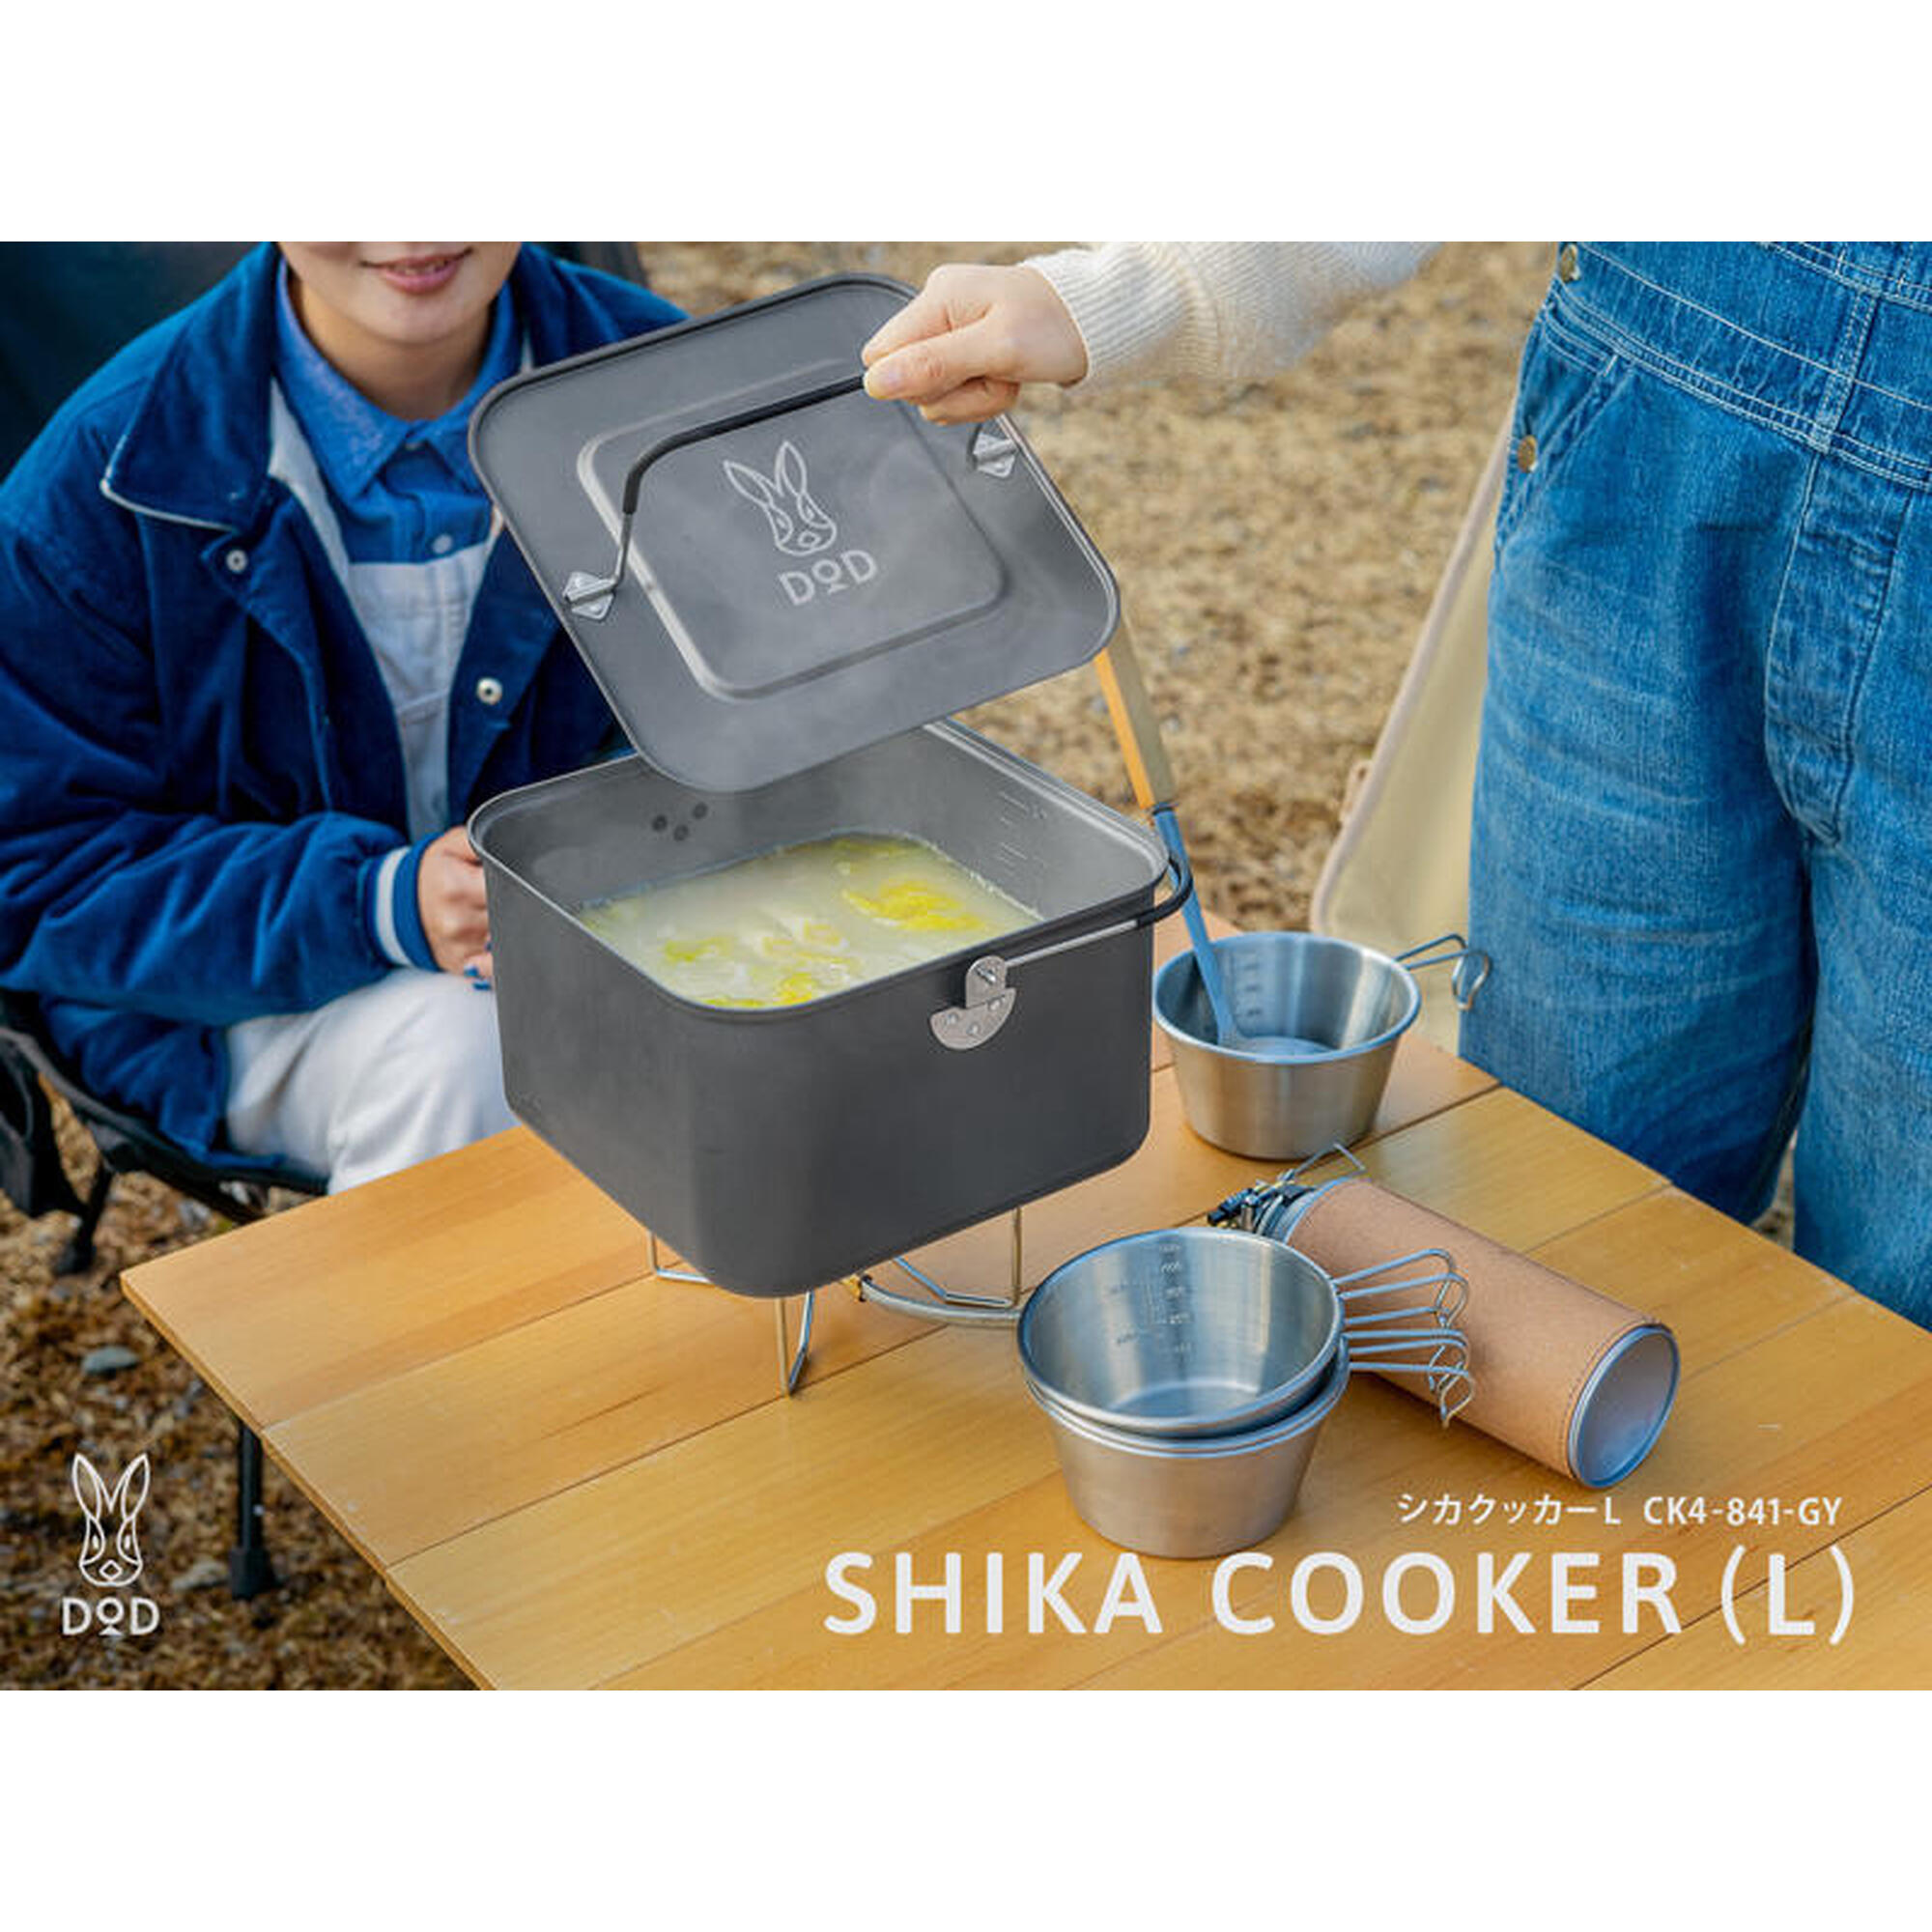 CK4-841-GY Shika 方型煮食鍋